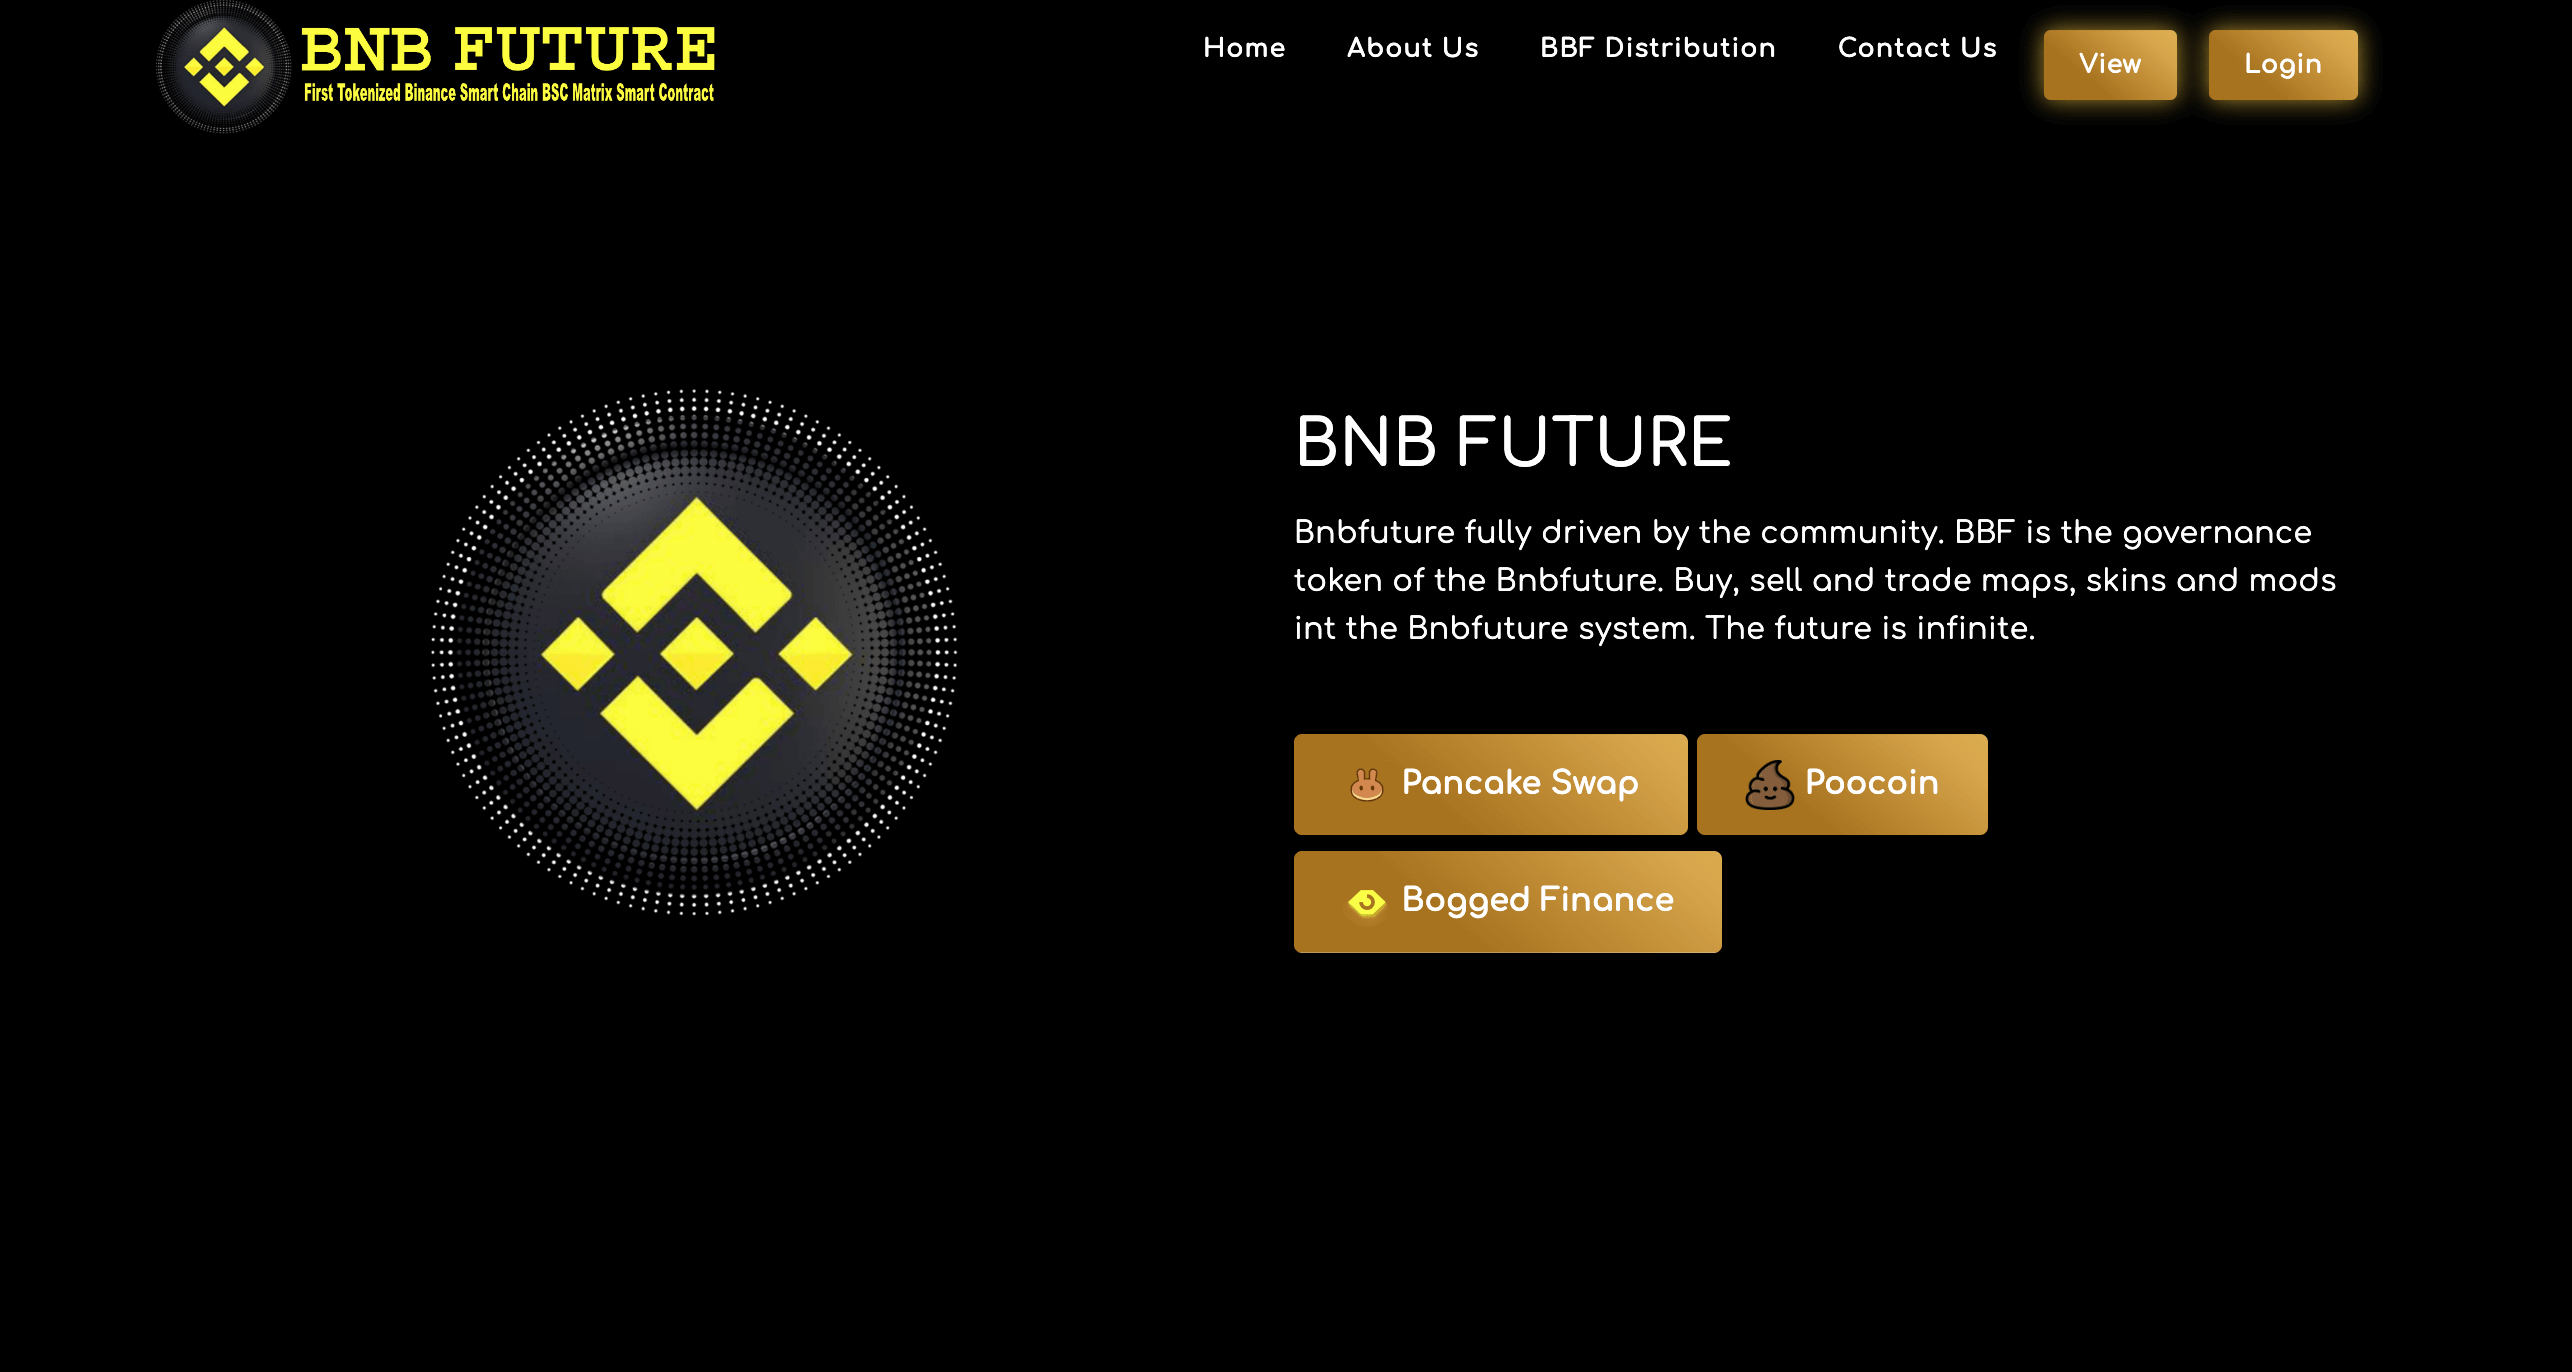 BNB FUTURE cover